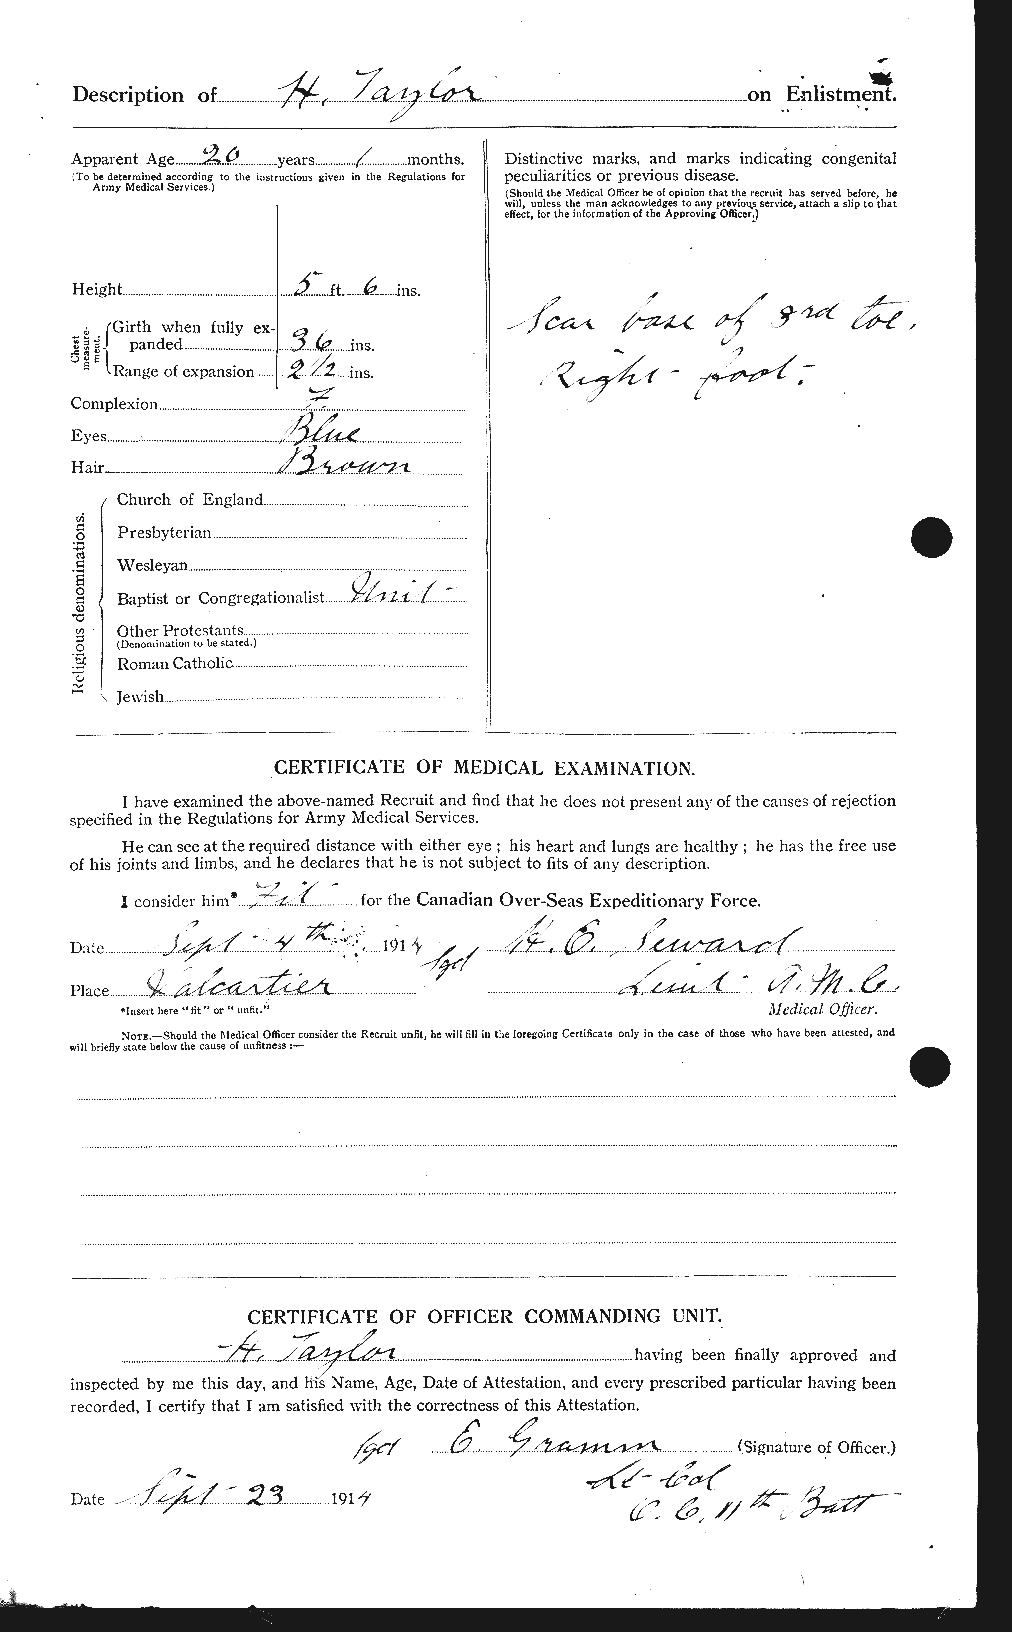 Dossiers du Personnel de la Première Guerre mondiale - CEC 626472b